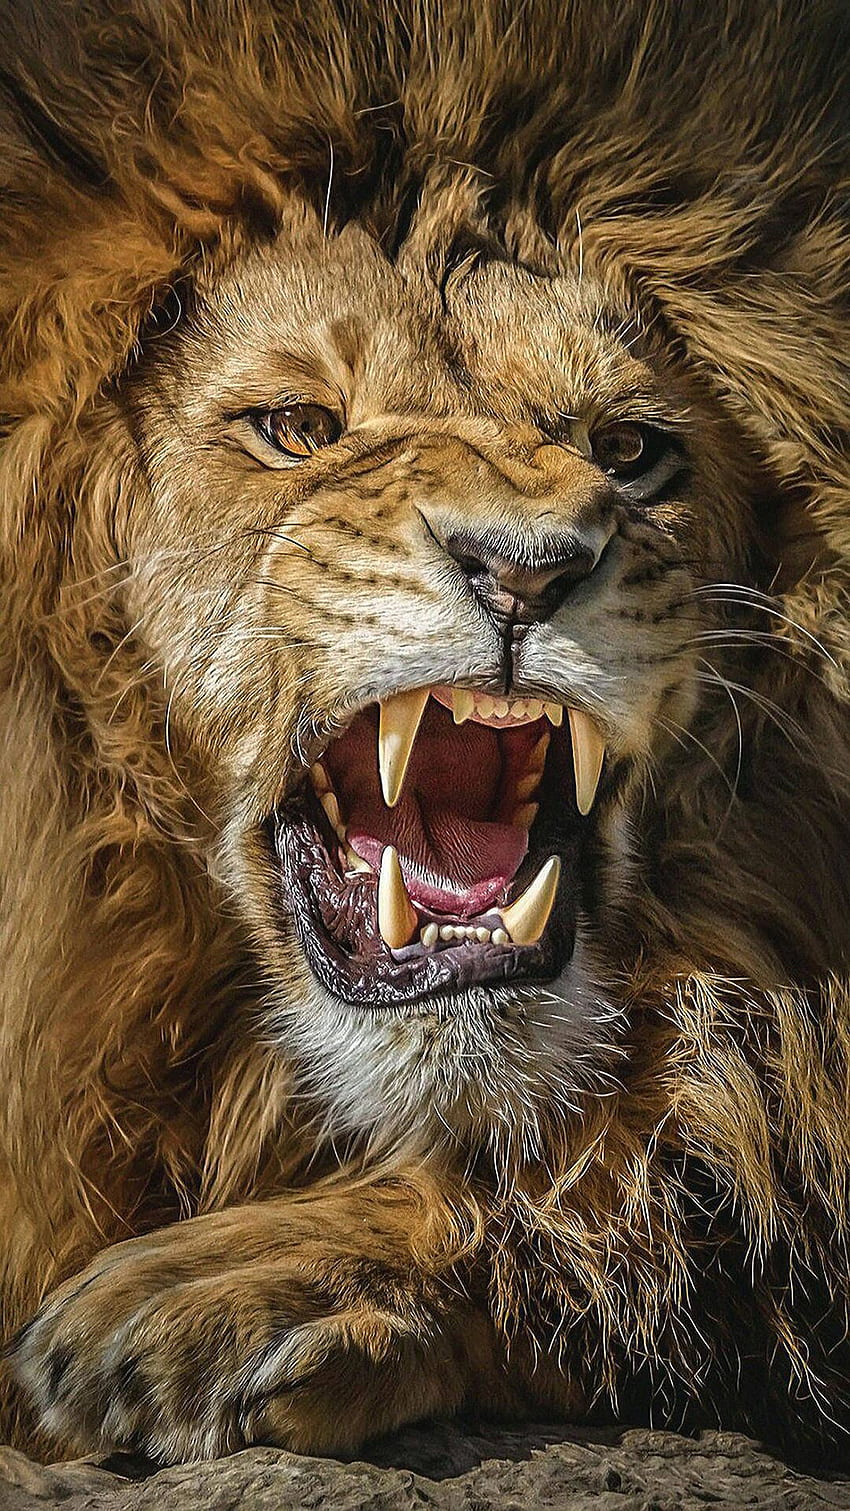 Roaring Lion, Lion Roaring Ultra HD phone wallpaper | Pxfuel